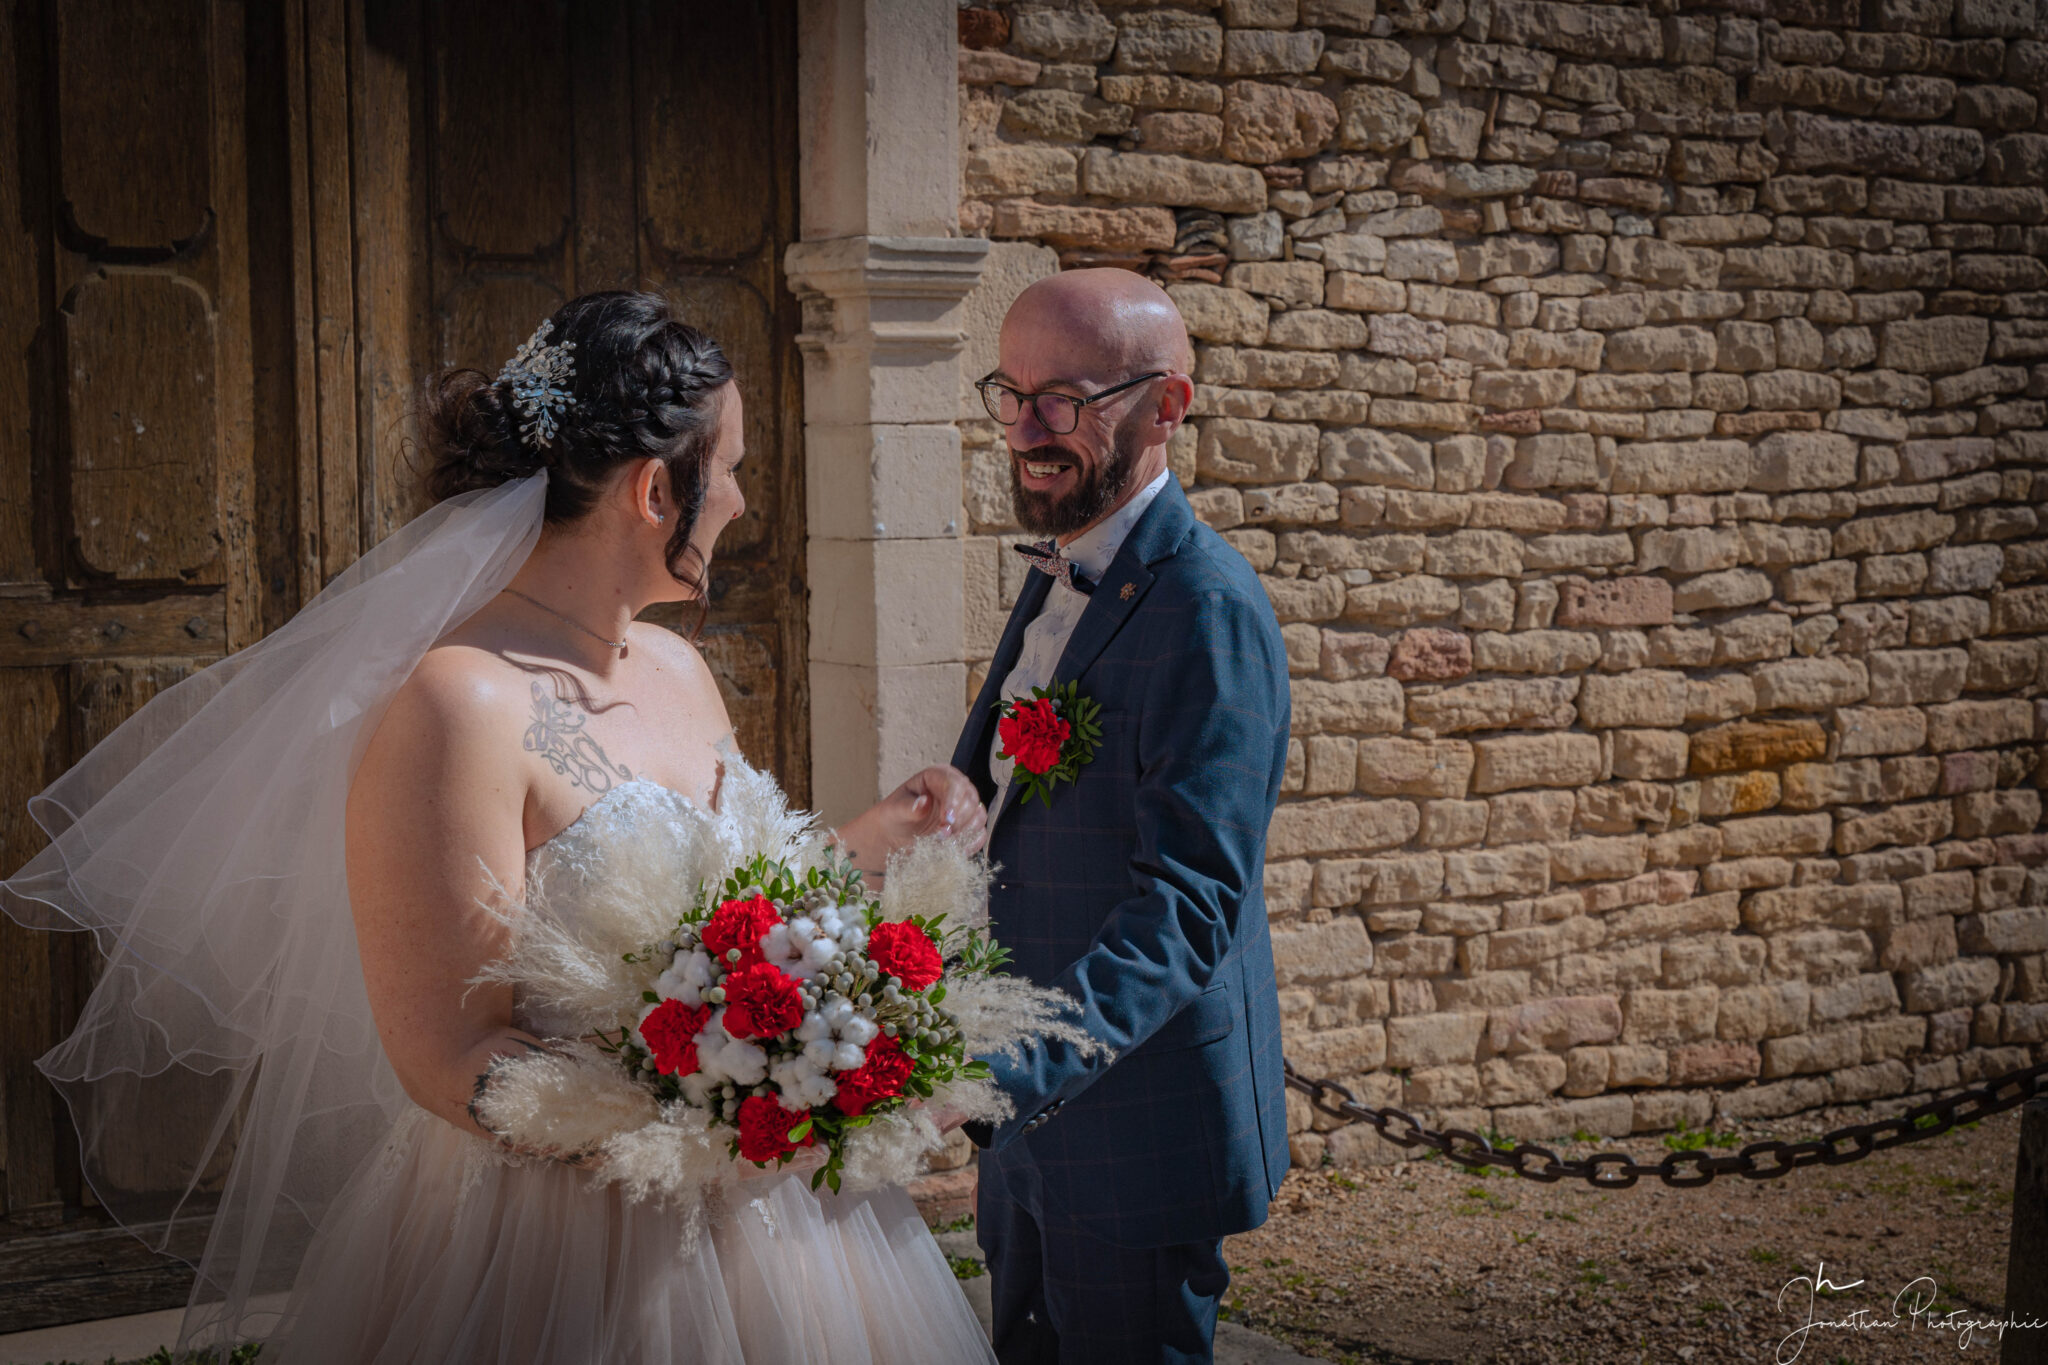 Photo des deux mariés avec le bouquet de fleurs dans la main de la mariée